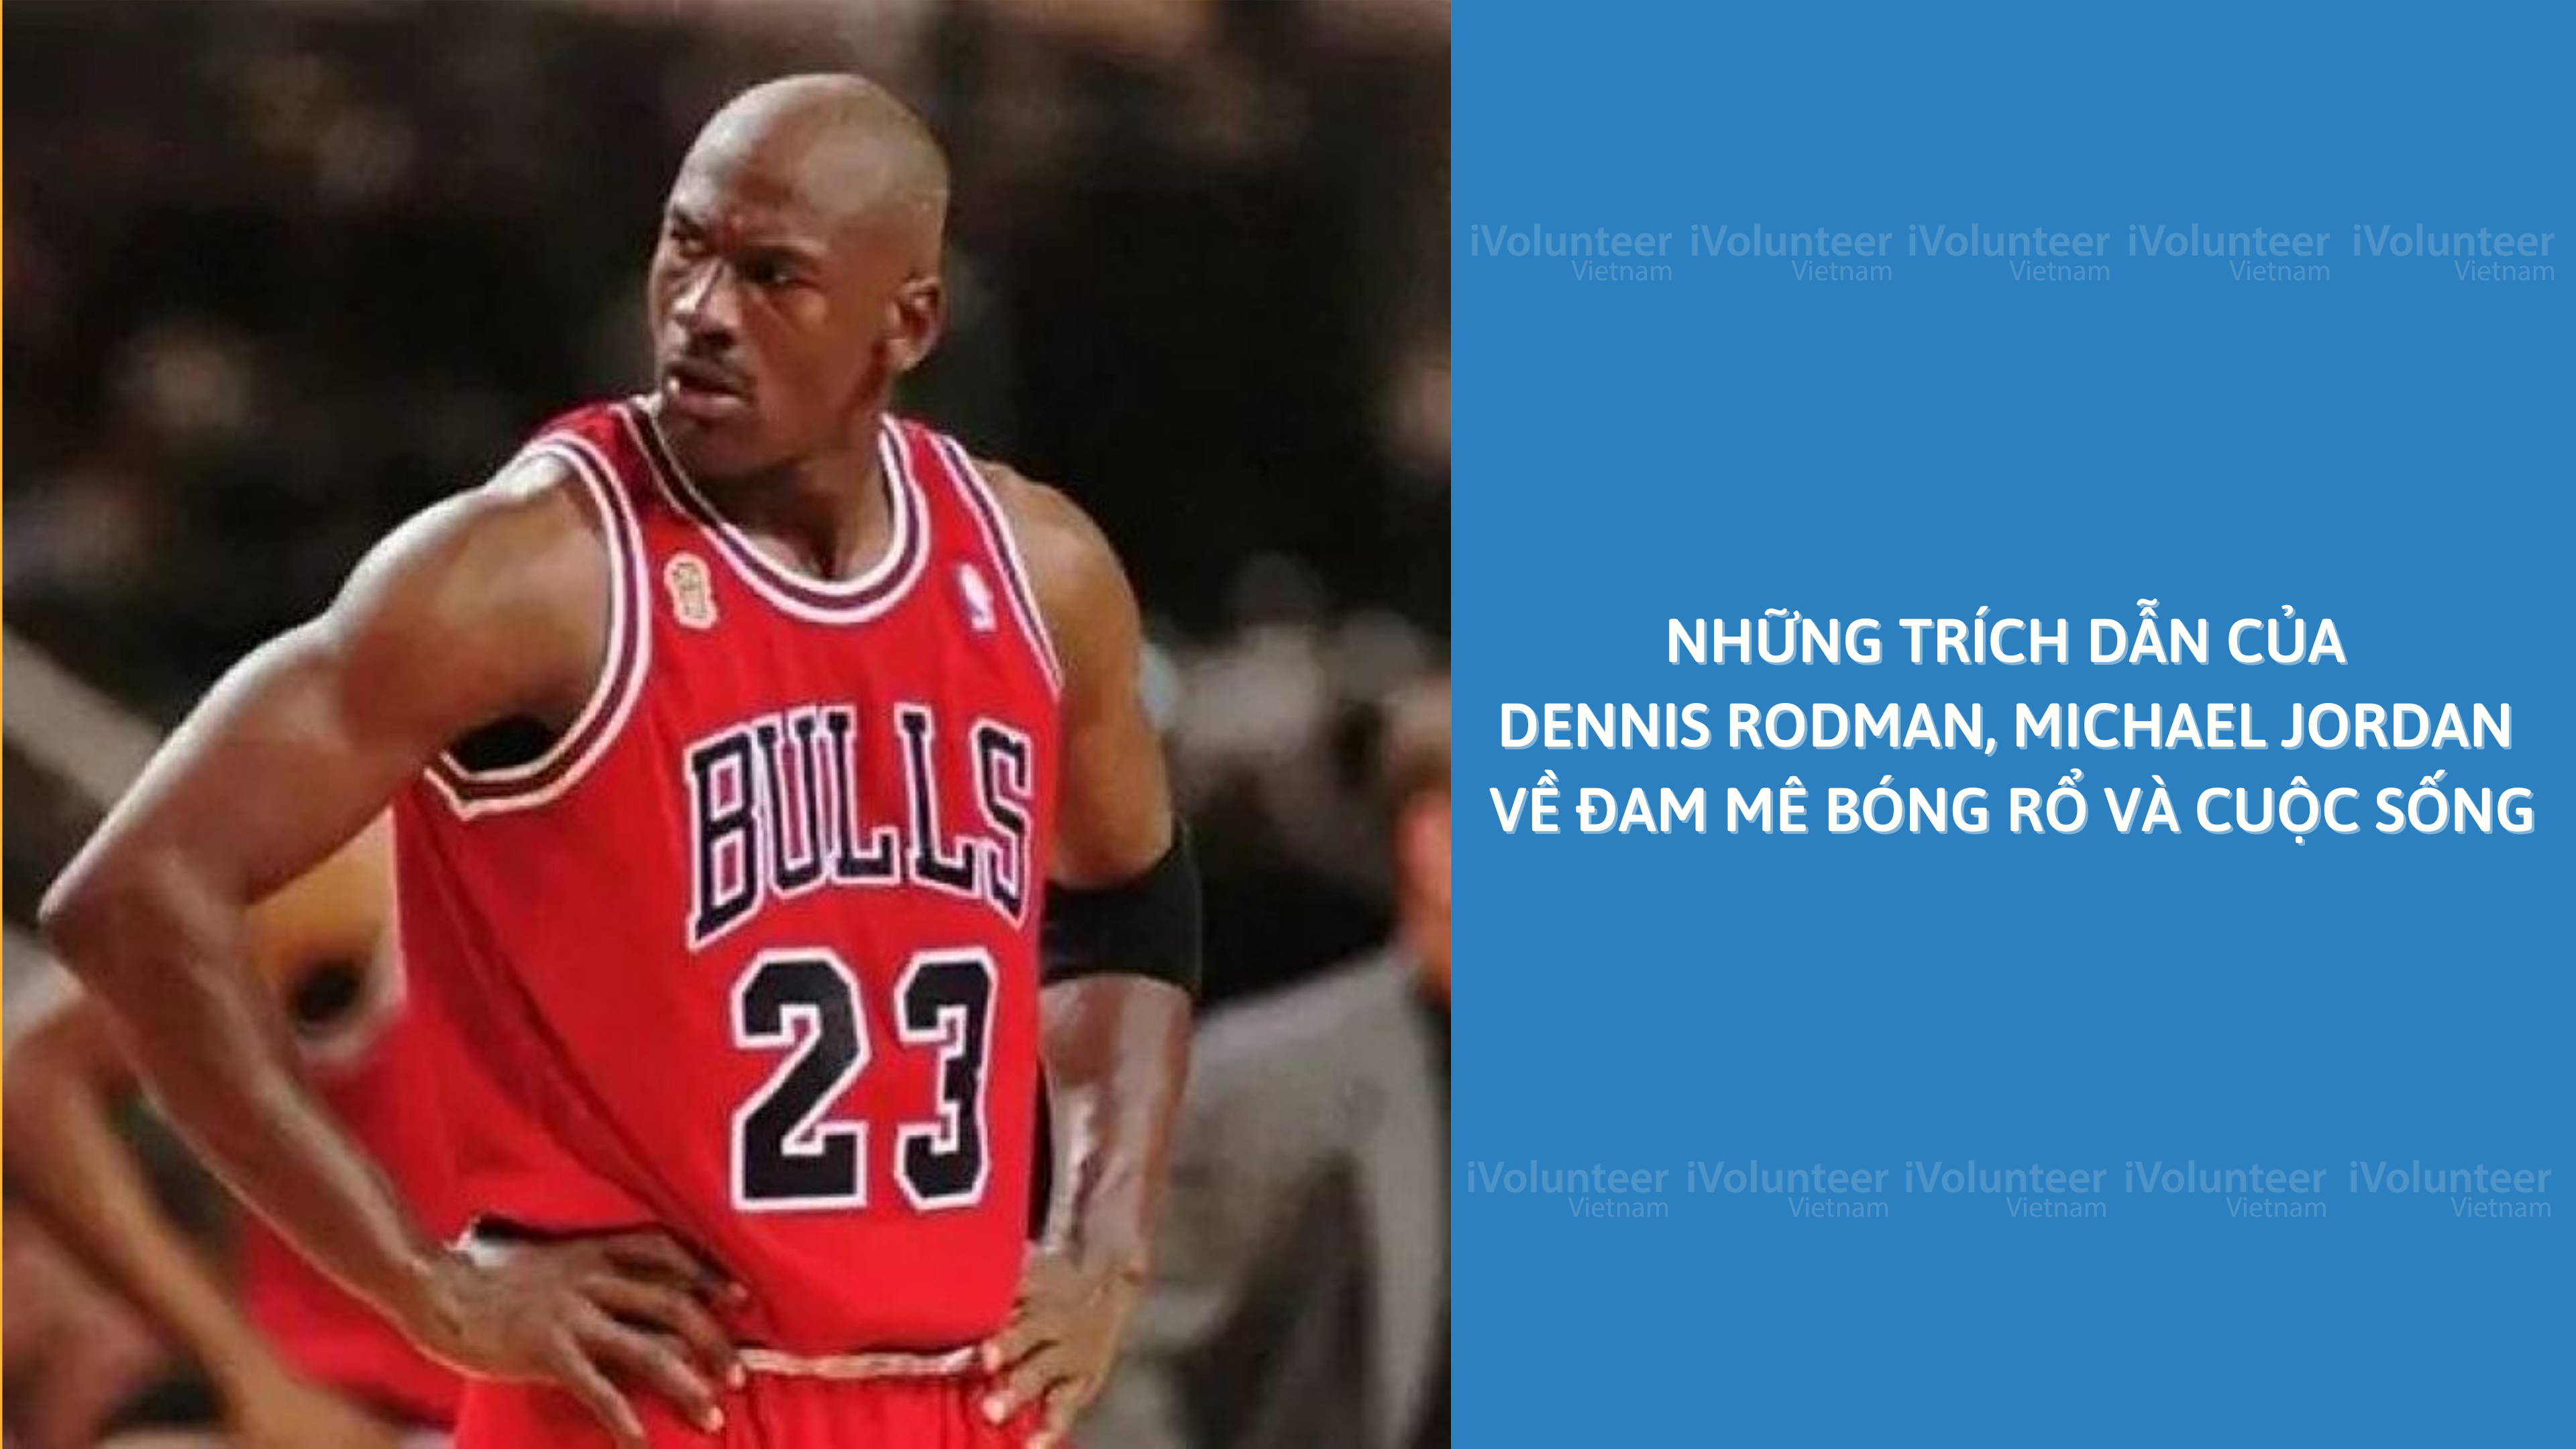 Những Trích Dẫn Của Dennis Rodman, Michael Jordan Về Đam Mê Bóng Rổ Và Cuộc Sống